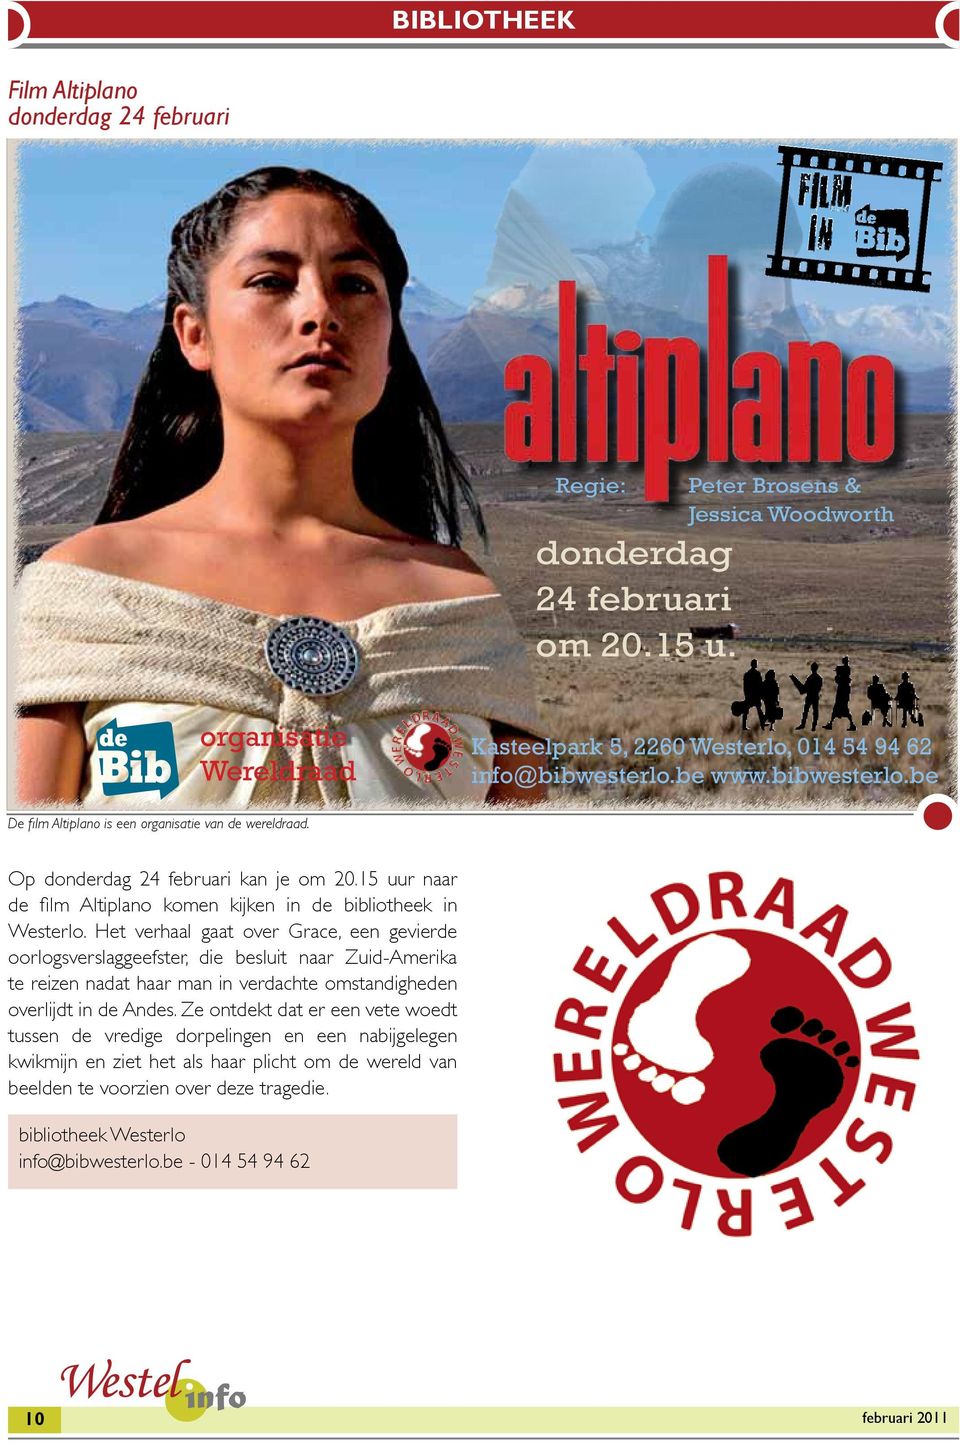 Op donderdag 24 februari kan je om 20.15 uur naar de film Altiplano komen kijken in de bibliotheek in Westerlo.